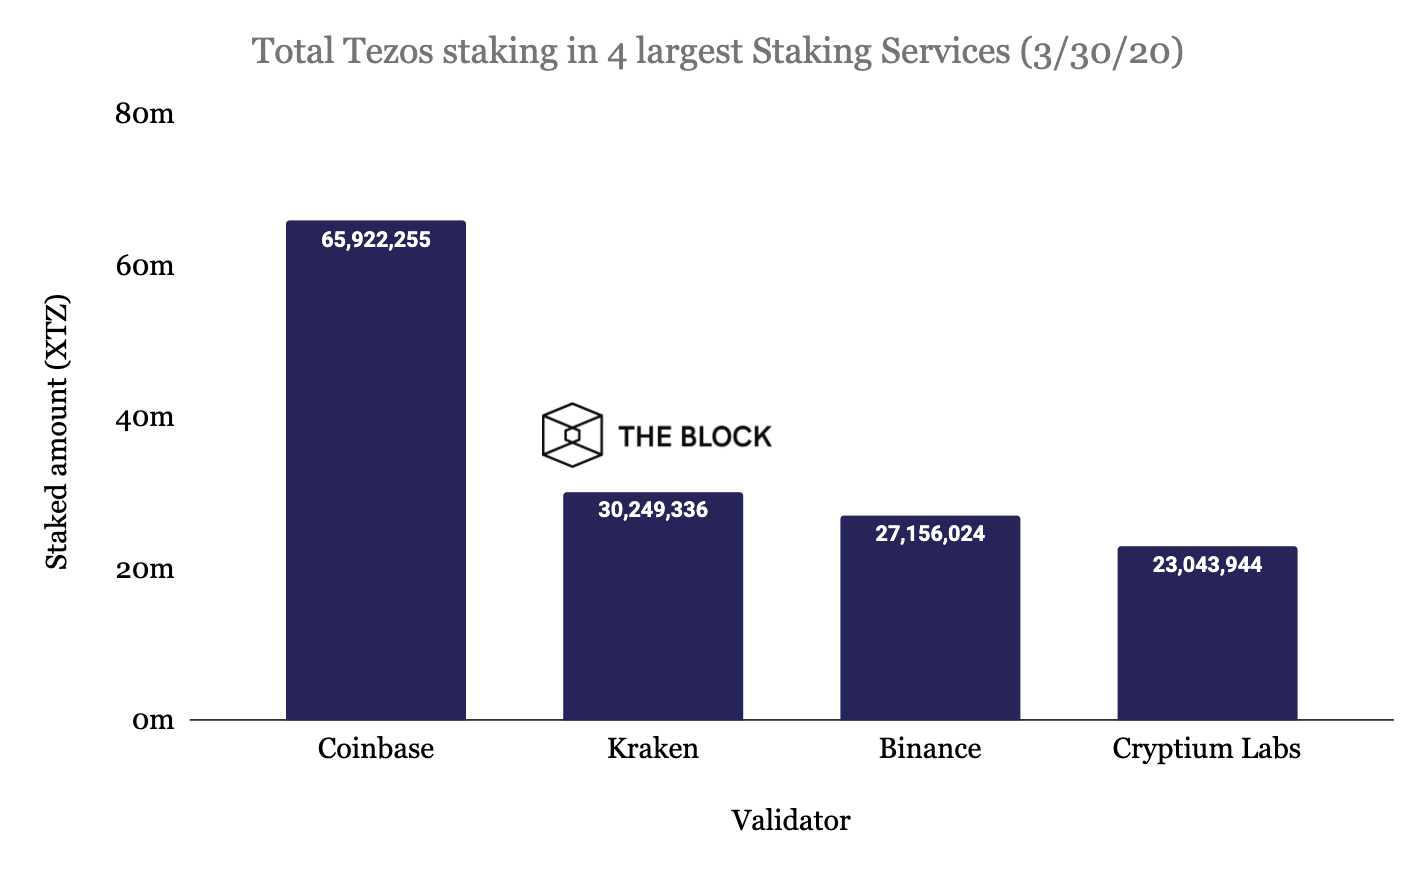 Coinbase Custody стал крупнейшим стейкинговым сервисом для Tezos